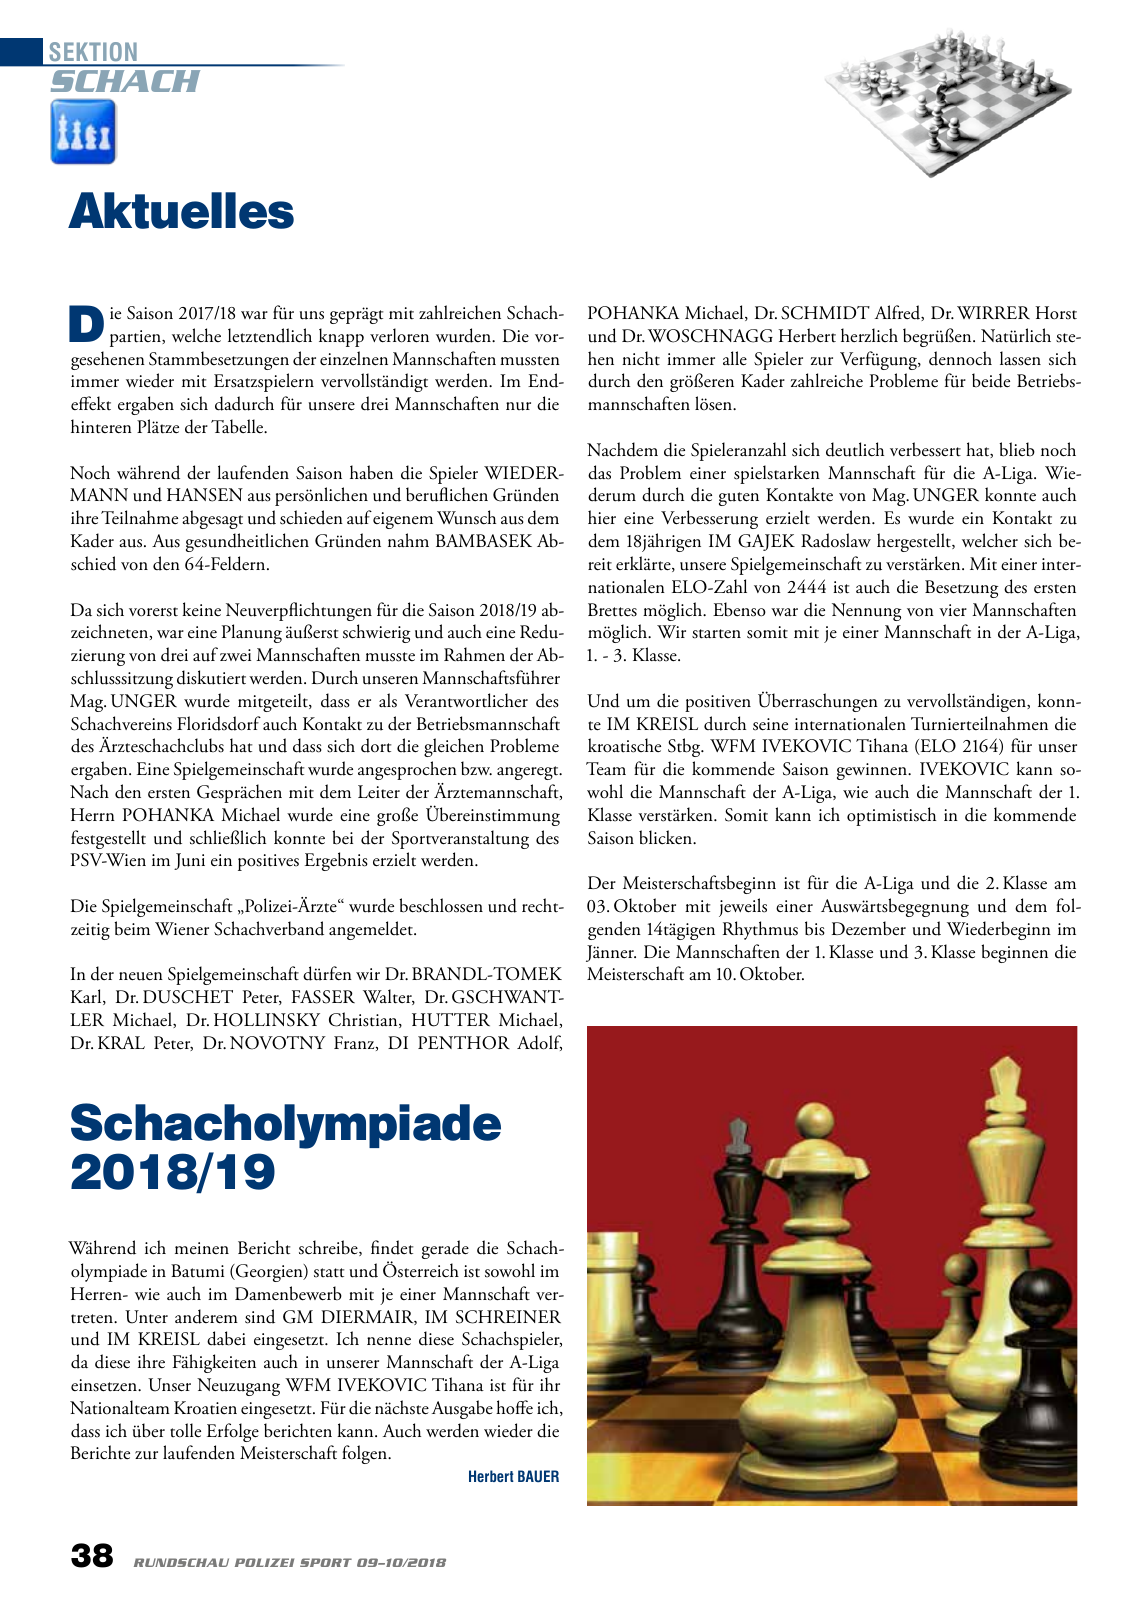 Vorschau Rundschau Polizei Sport 09-10/2018 Seite 38